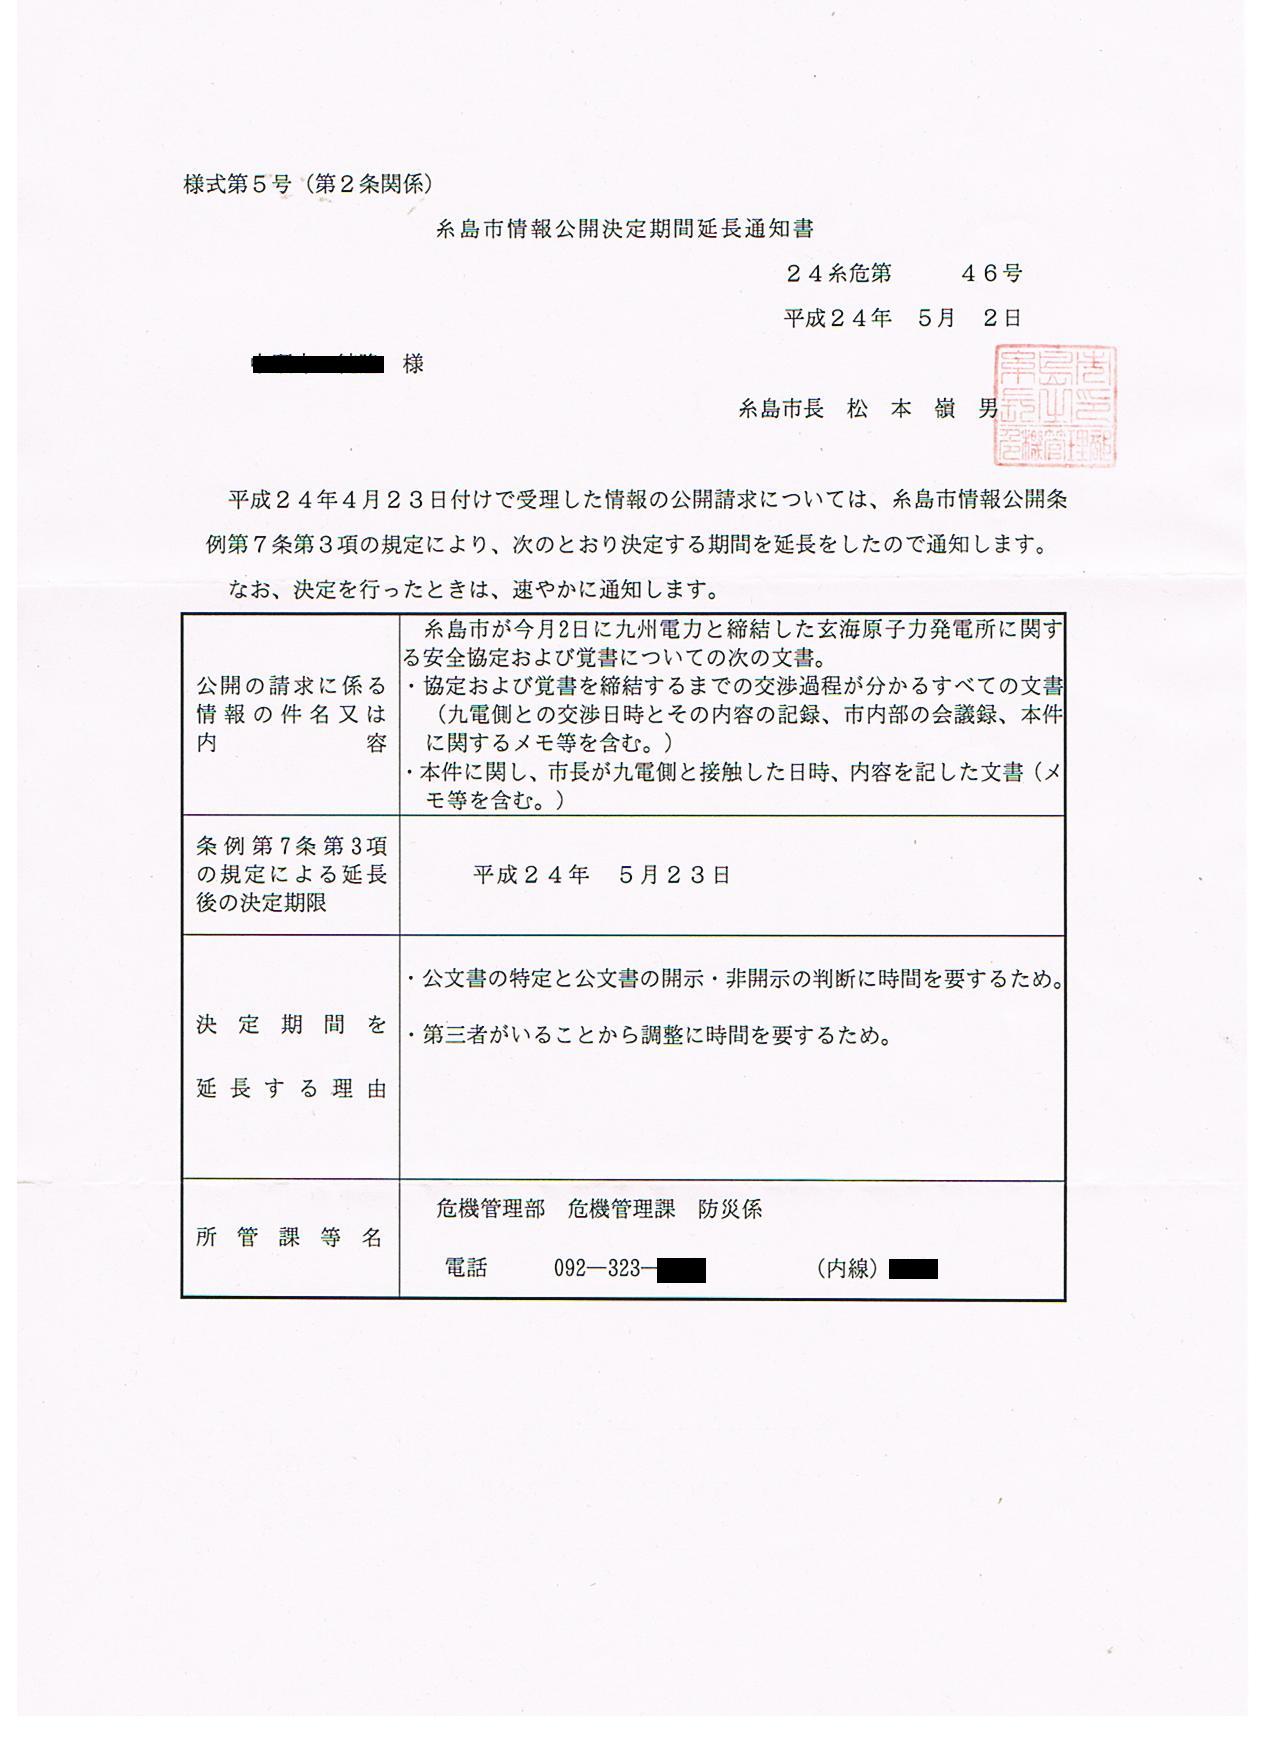 http://hunter-investigate.jp/news/2012/05/09/gennpatu%20004.jpg